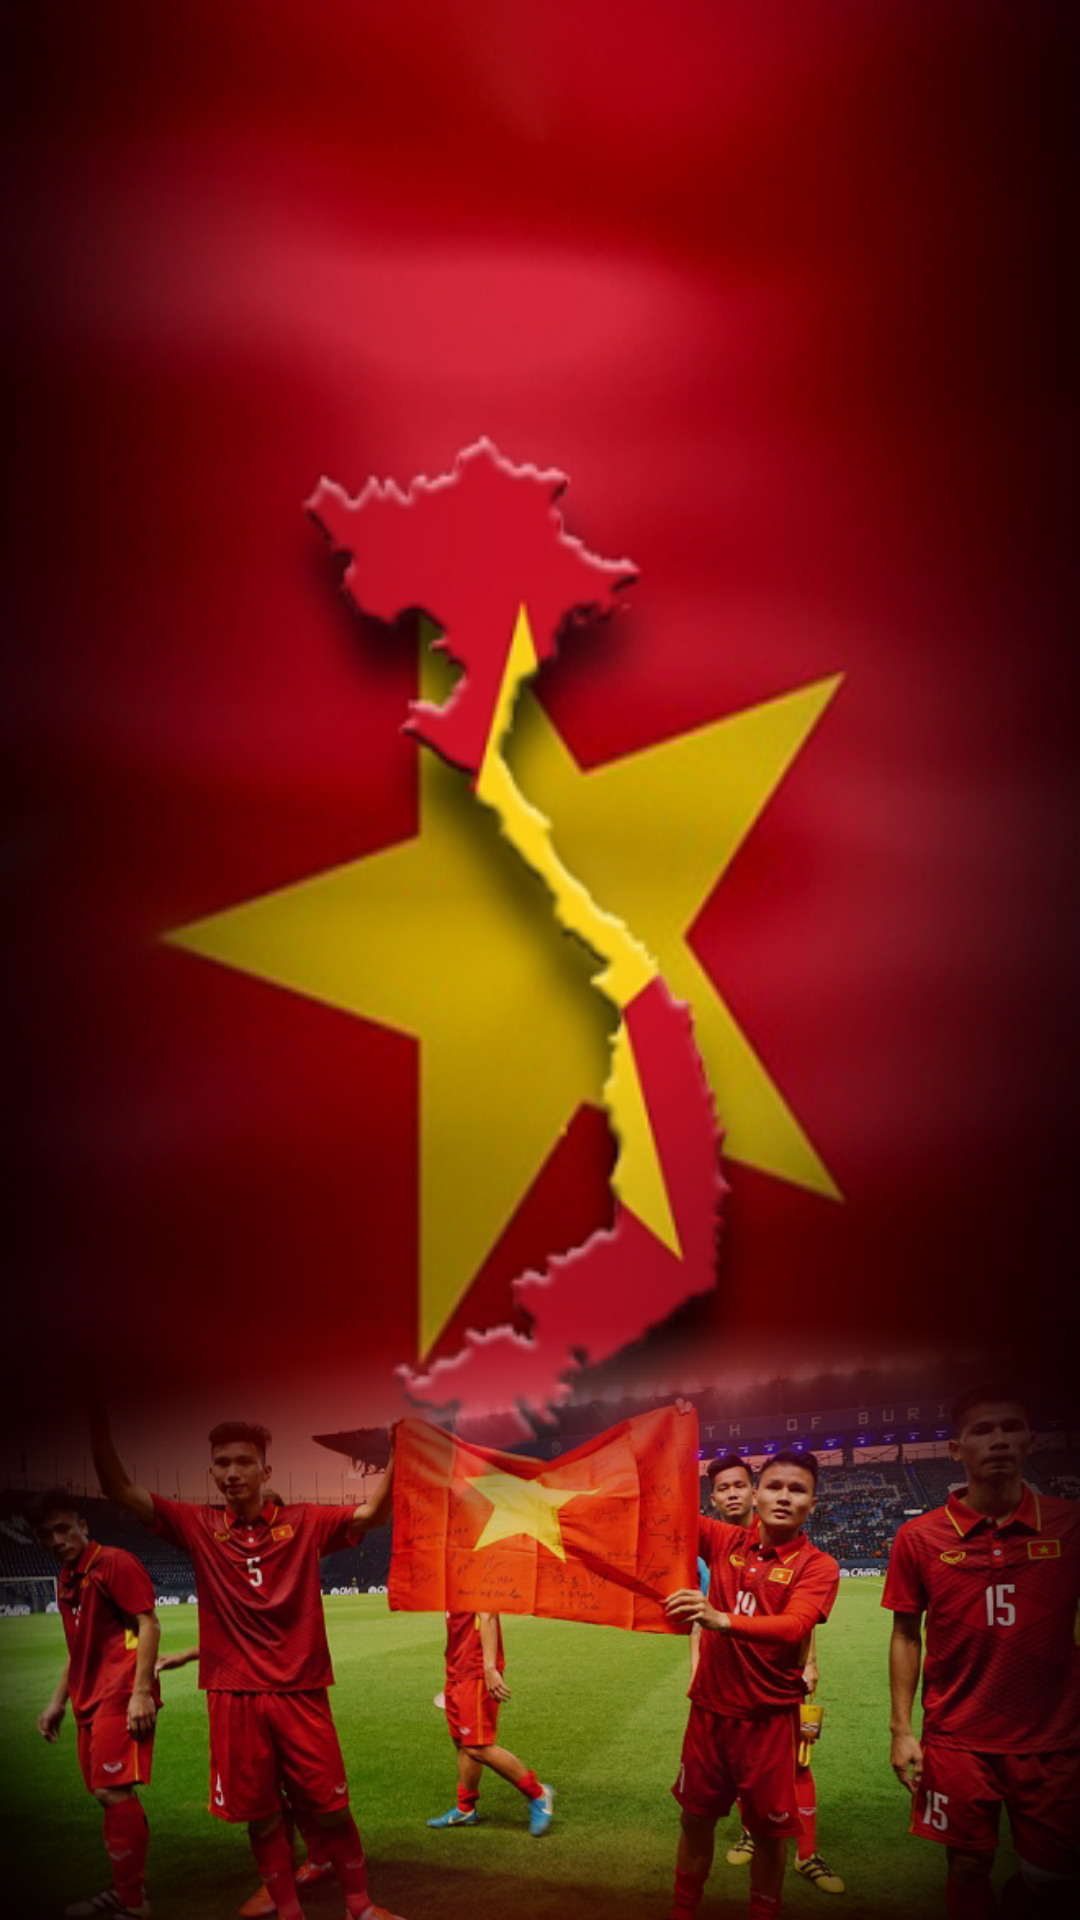 Cờ Việt Nam là biểu tượng cao quý của đất nước và dân tộc Việt Nam. Hình ảnh của cờ đỏ sao vàng luôn làm ta cảm thấy tự hào và niềm tự hào của dân tộc càng được khẳng định thông qua các hình ảnh của nó.